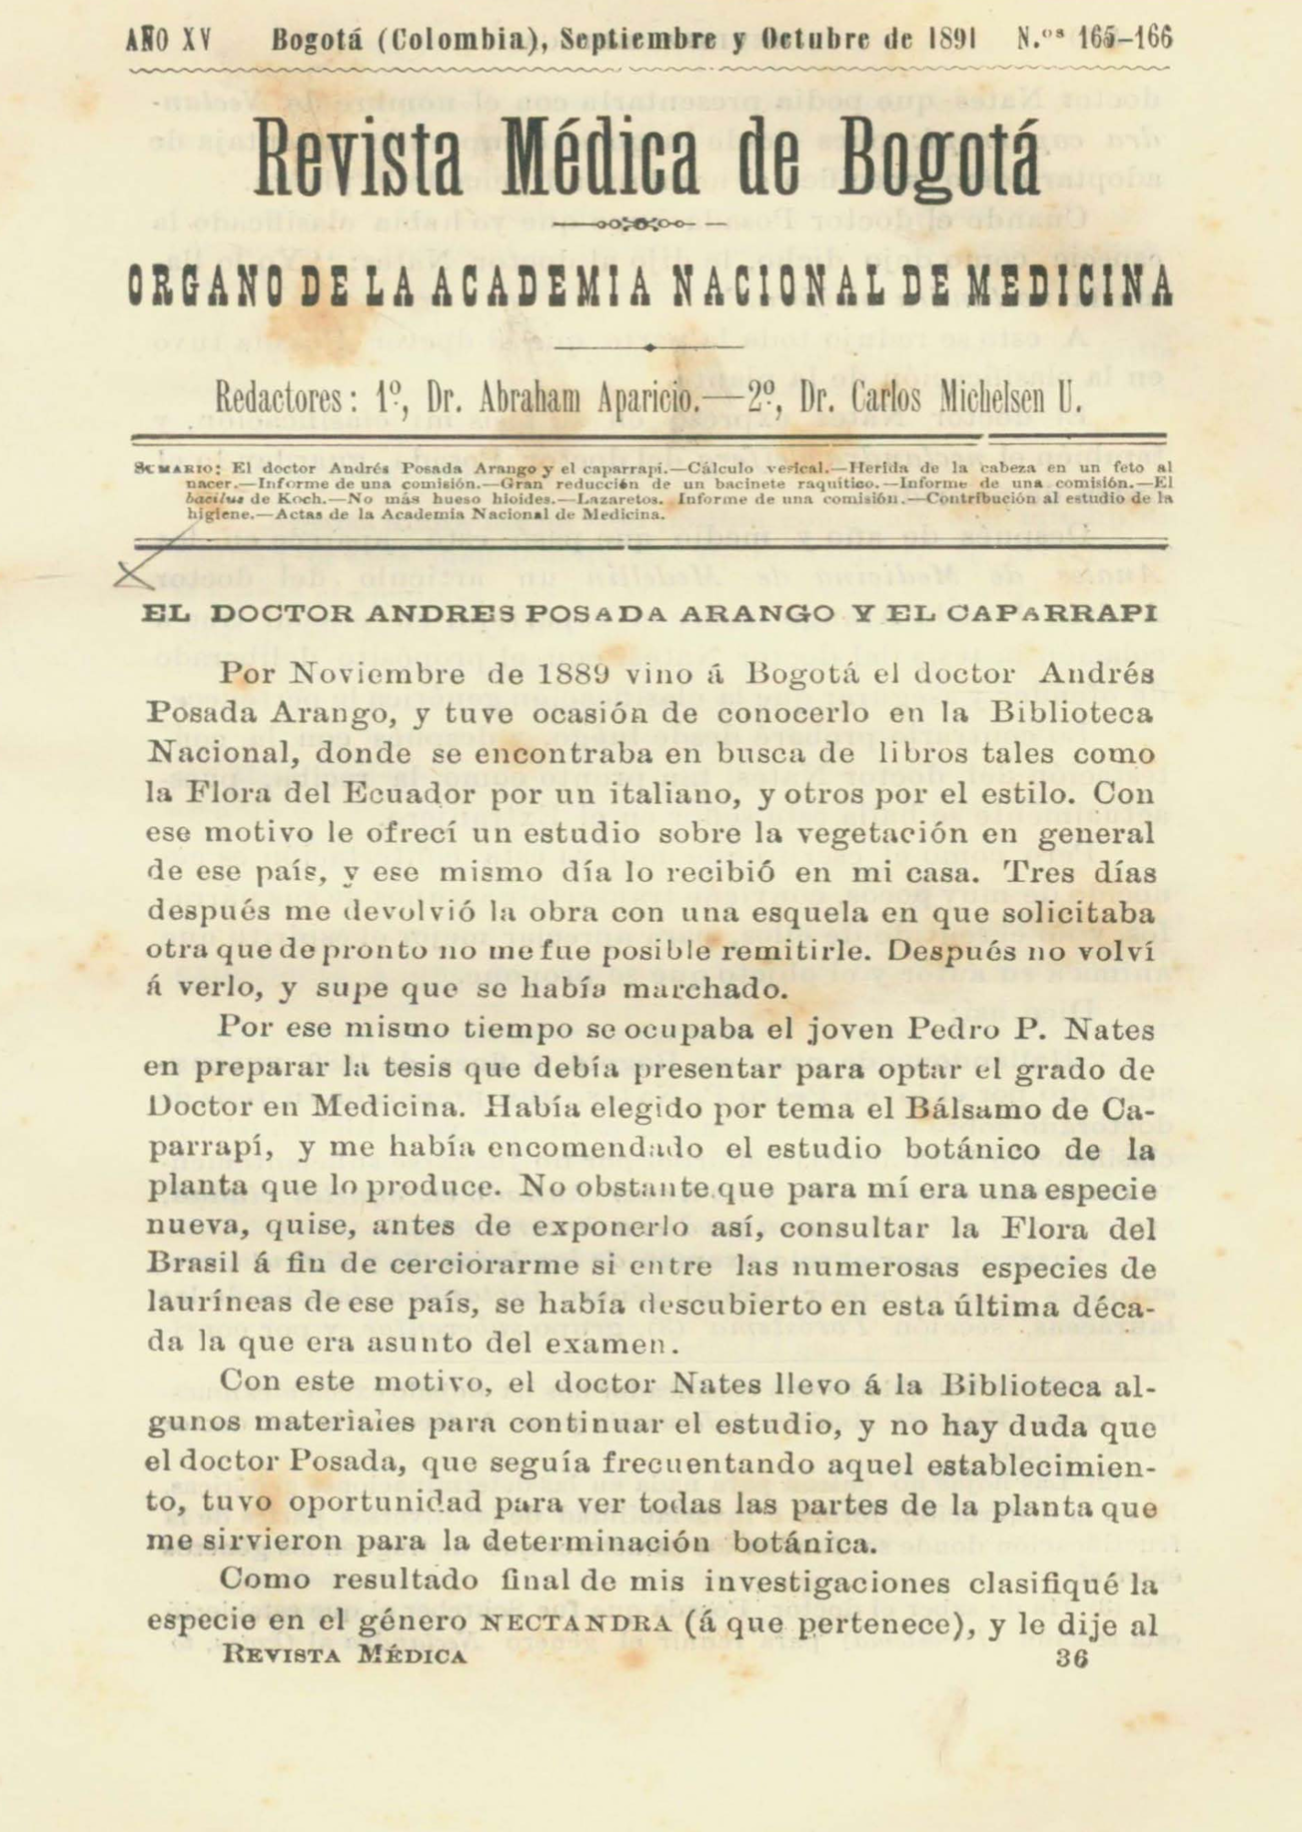 					Ver Vol. 15 Núm. 165-166 (1891): Revista Médica de Bogotá. Serie 15. Septiembre - Octubre de 1891. Núm. 165-166
				